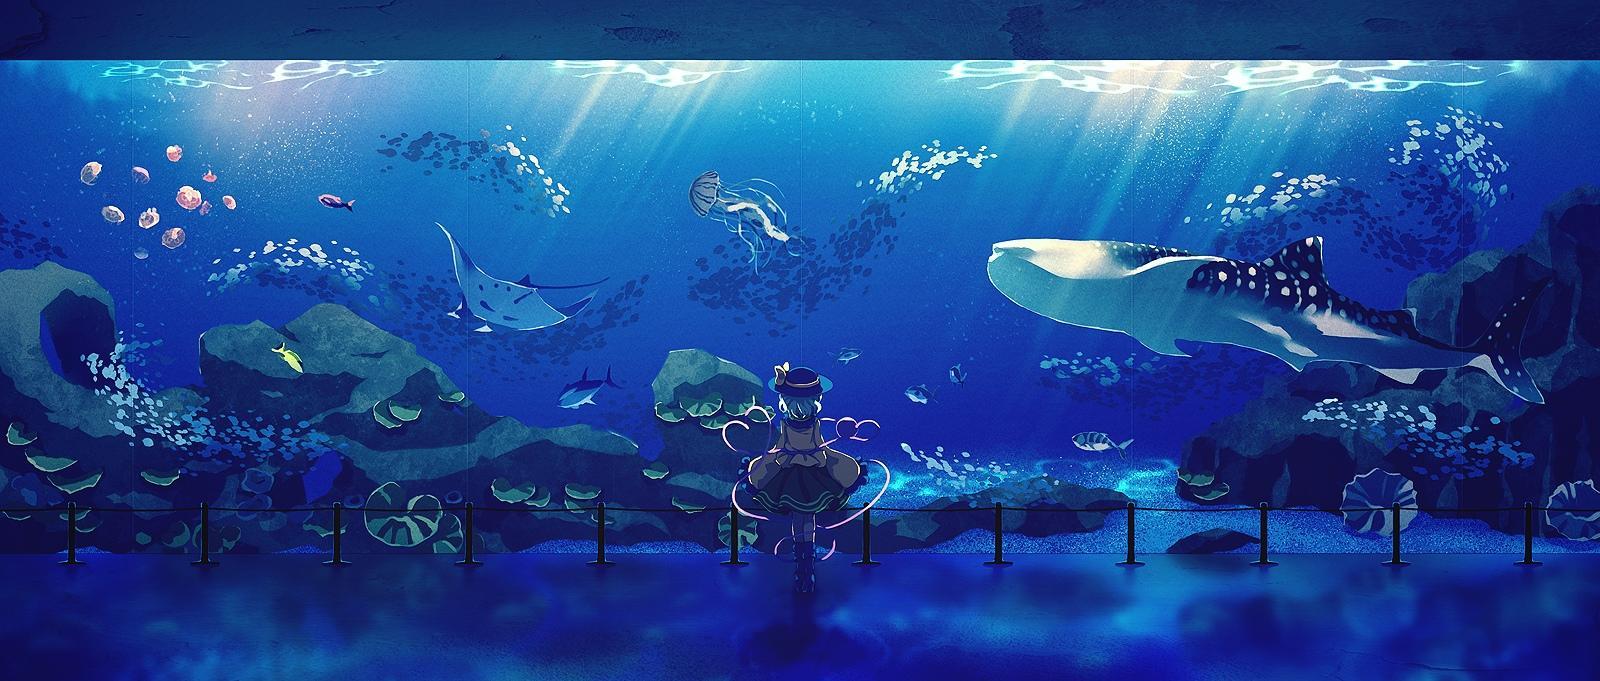 Whale Aquarium World cartoon